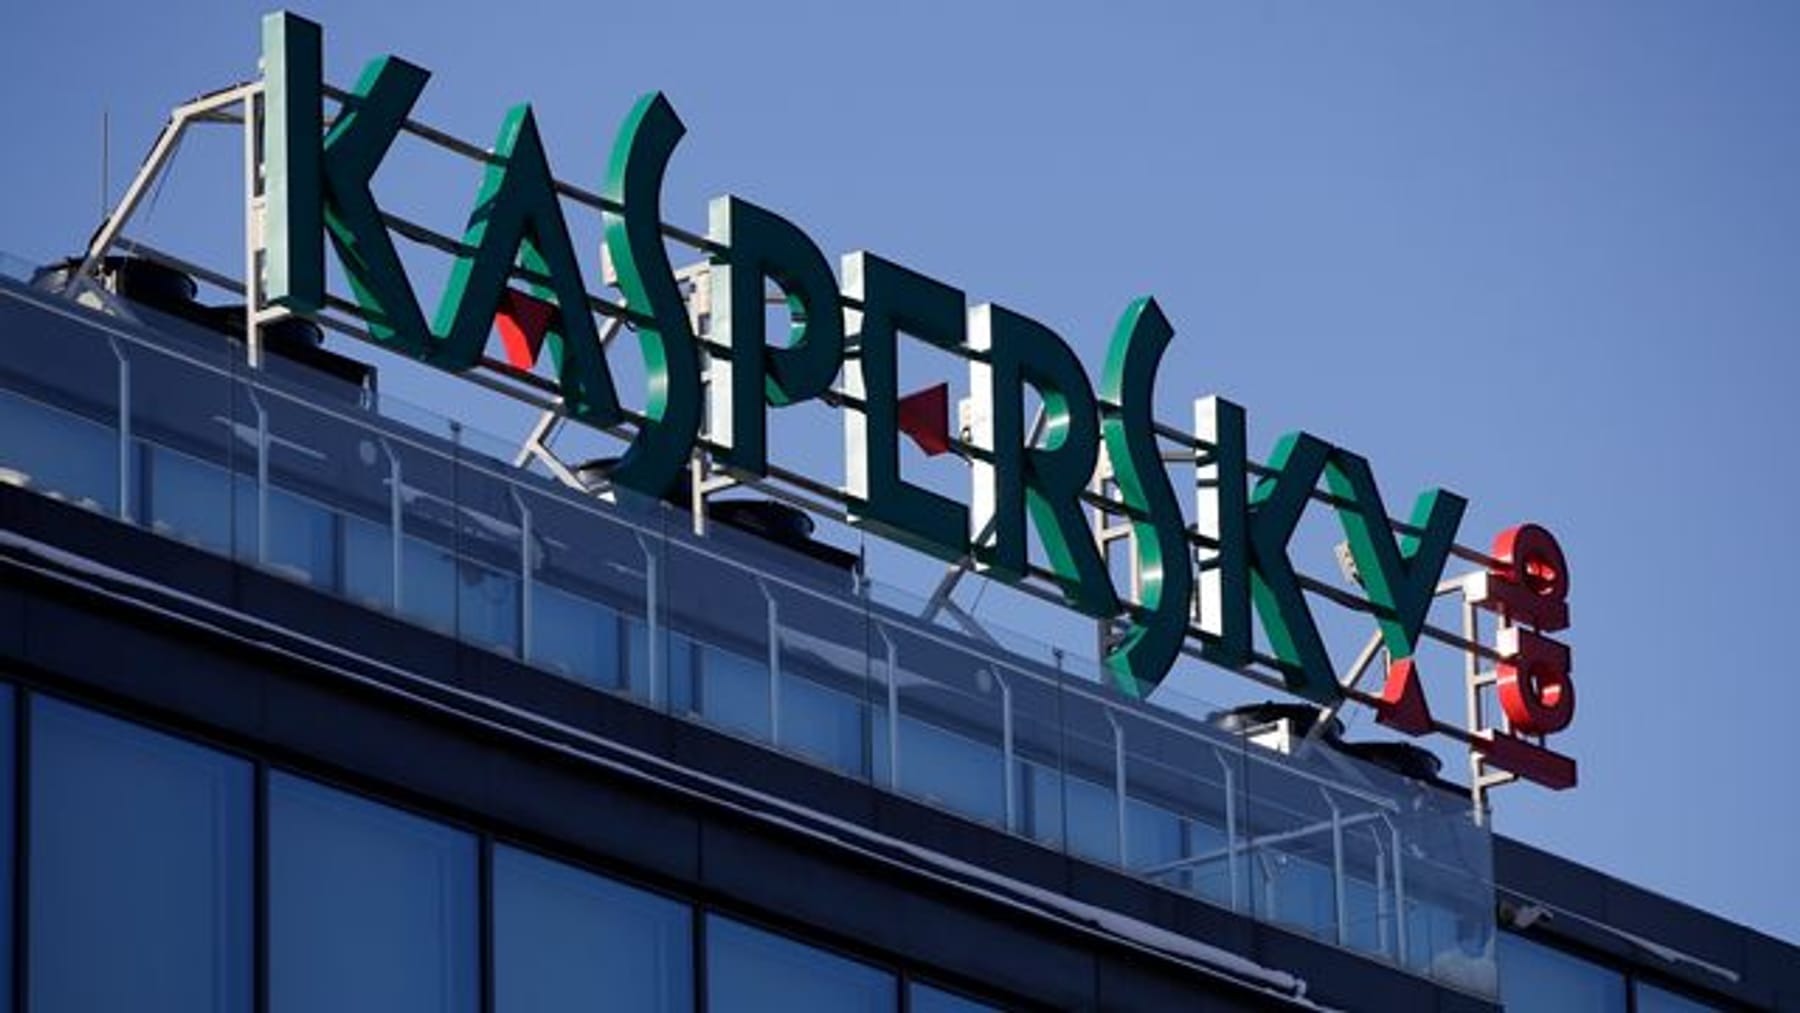 Kaspersky beschuldigt Bitkom van discriminatie en zegt lidmaatschap op